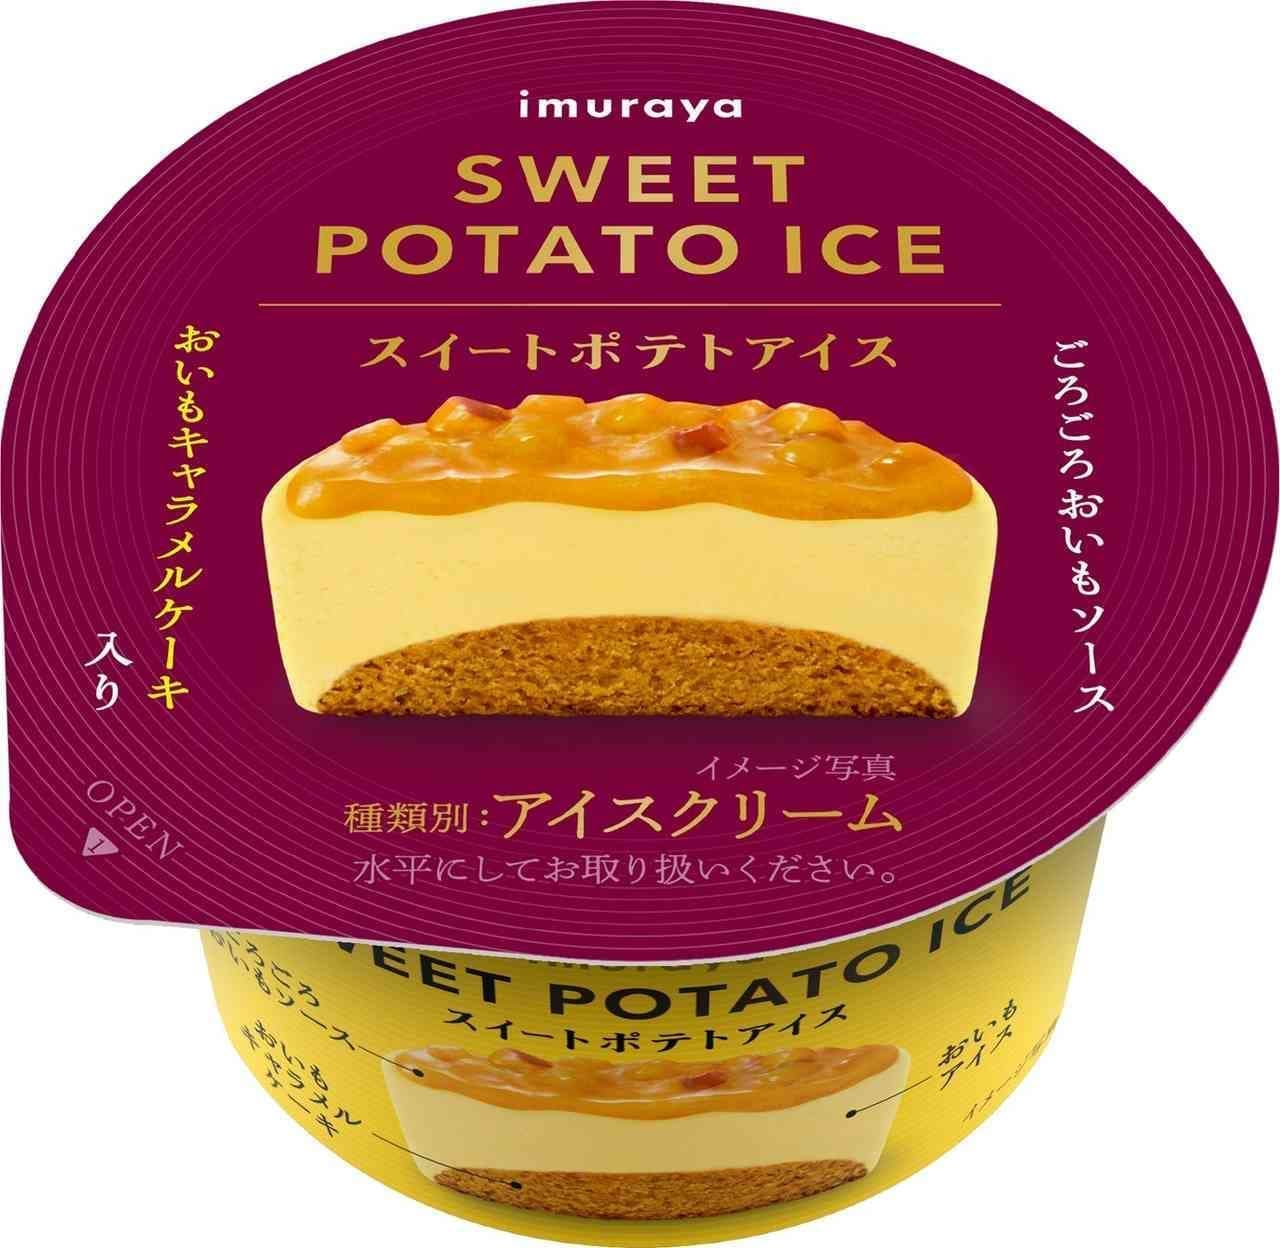 Imuraya "Sweet Potato Ice Cream